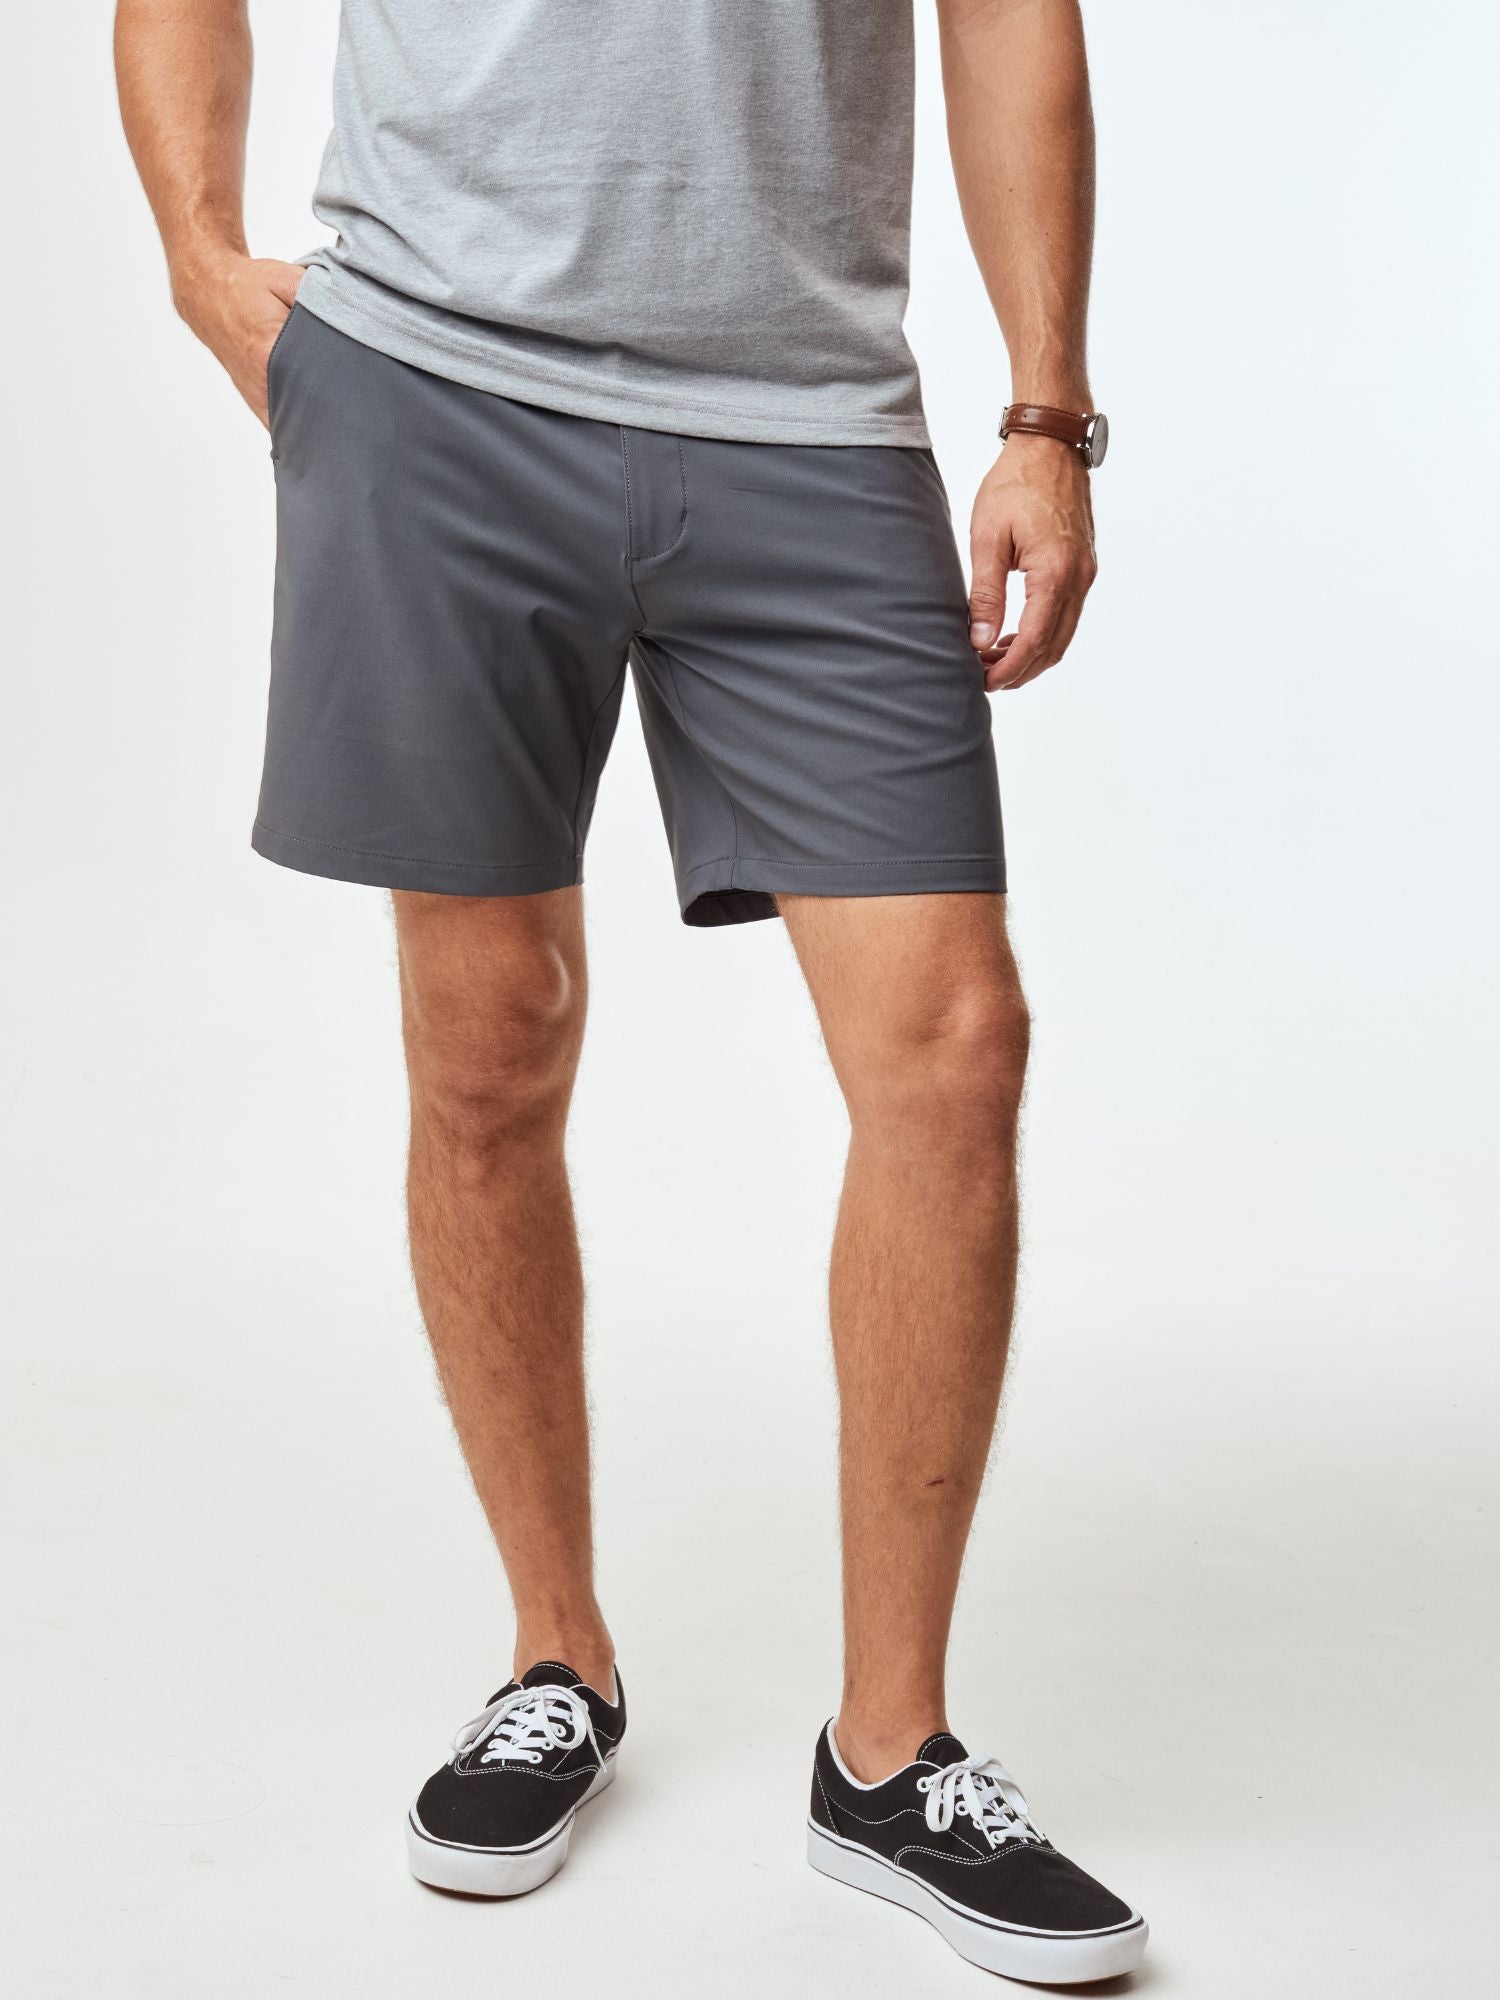 Shop Men's Shorts | Fresh Clean Threads Canada